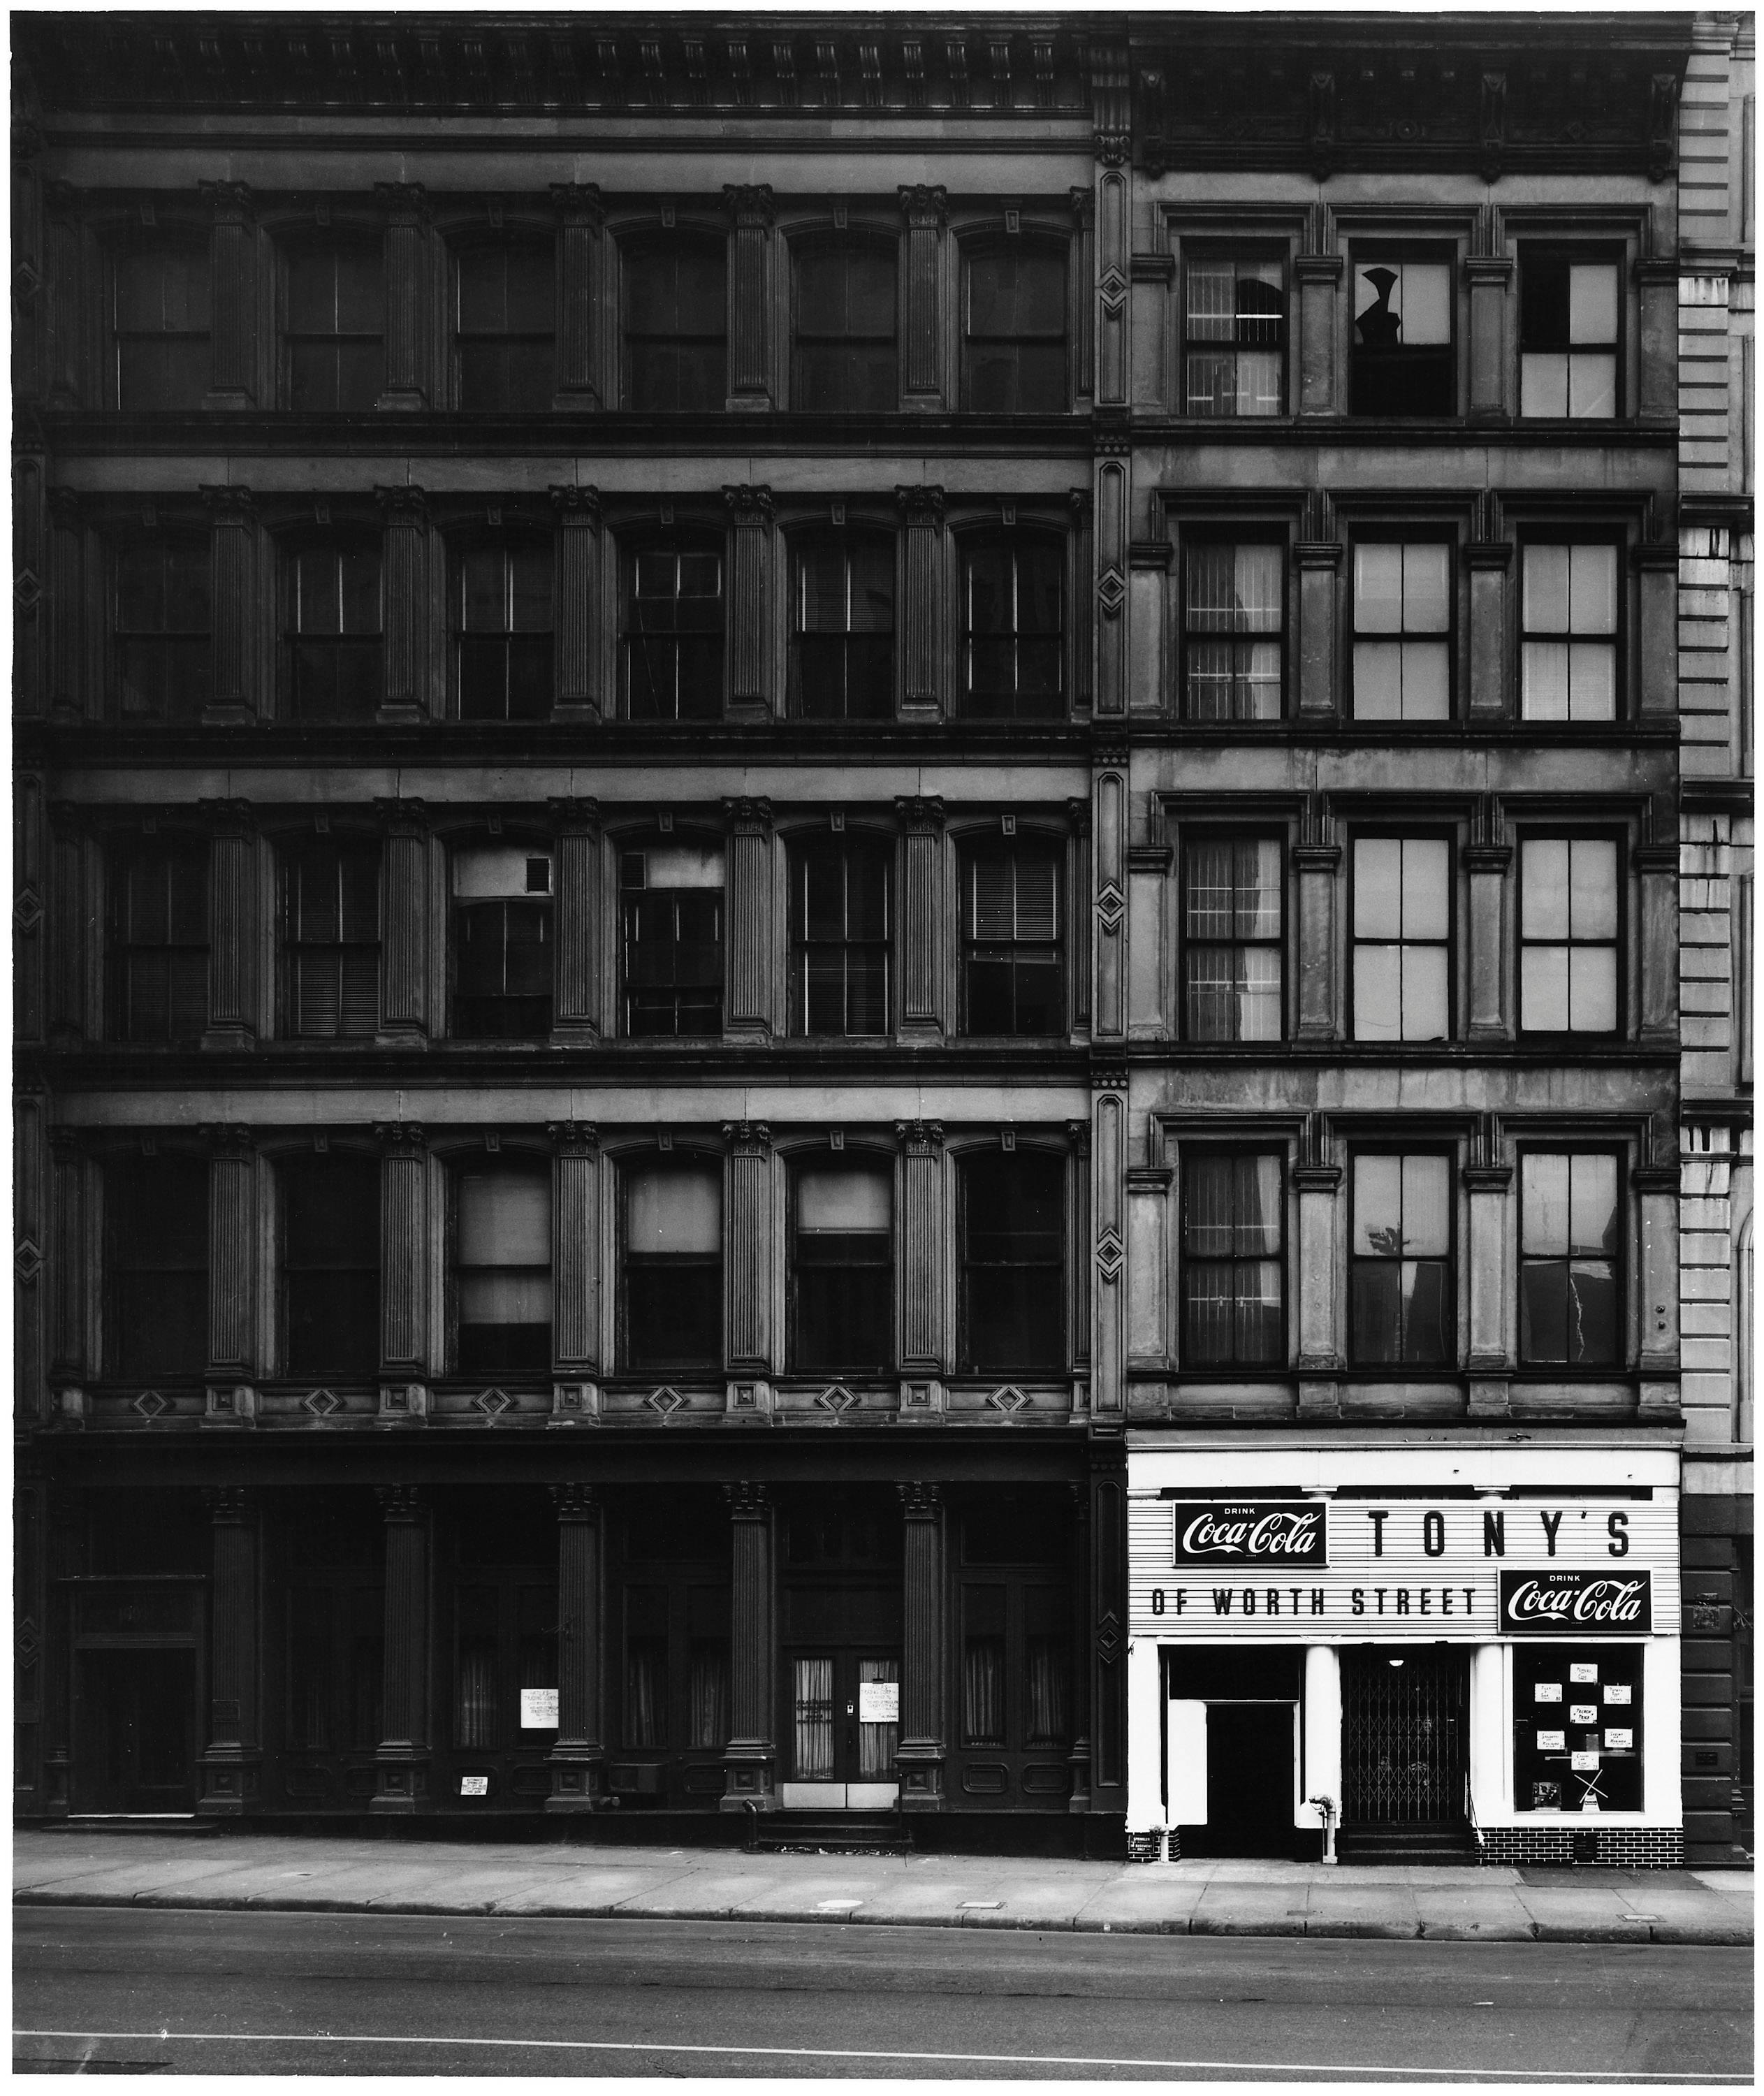 New York City, 1969 - Elliott Erwitt (Photographie de rue en noir et blanc)
Signé, inscrit avec le titre et daté sur l'étiquette de l'artiste qui l'accompagne
Tirage à la gélatine argentique, imprimé ultérieurement

Disponible en quatre tailles :
11